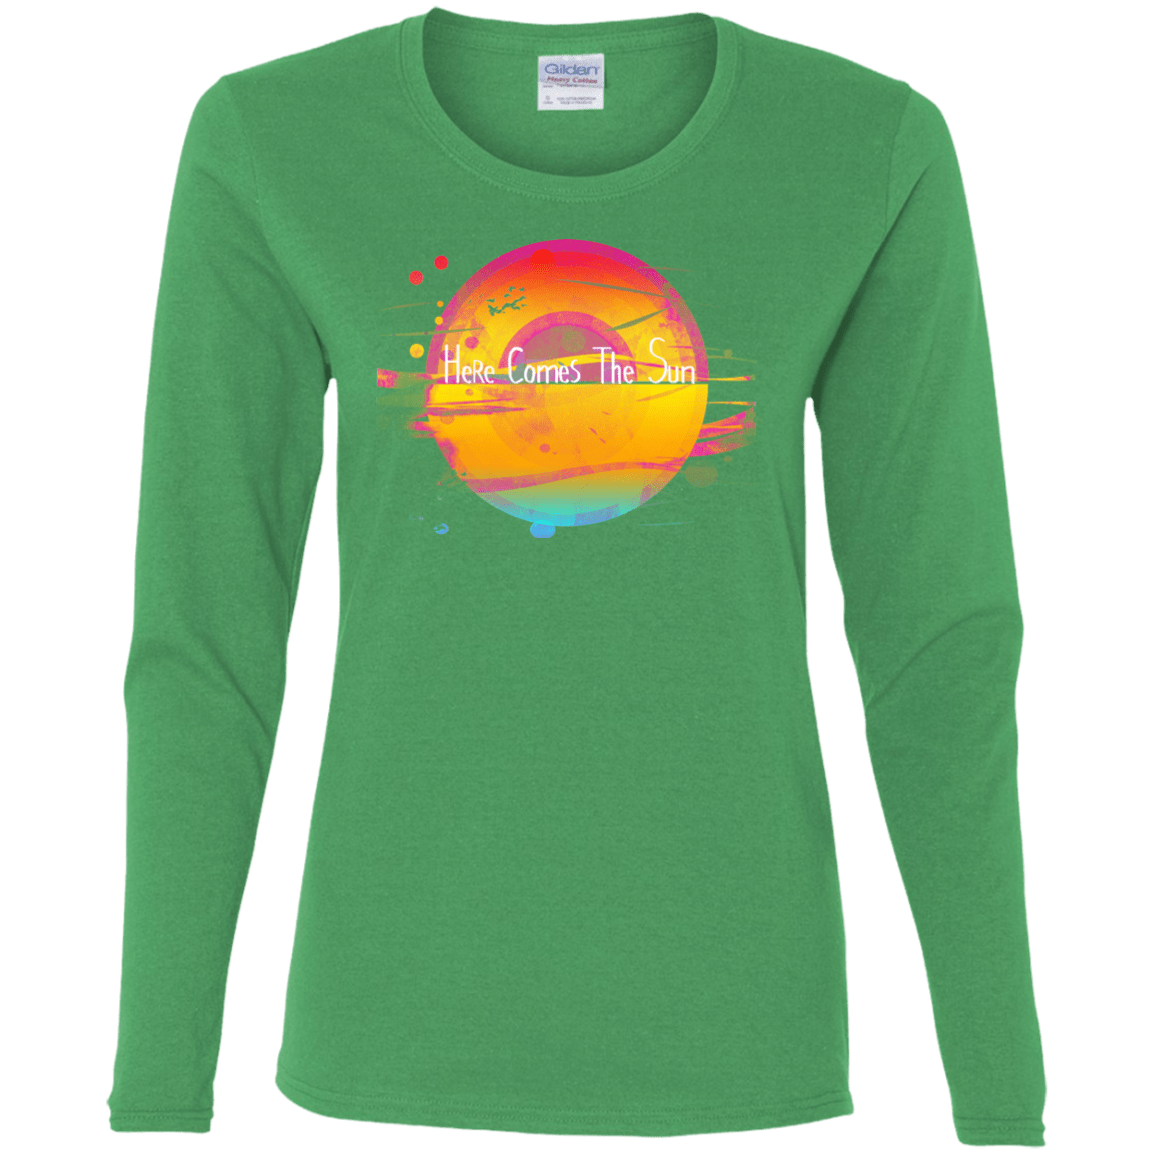 T-Shirts Irish Green / S Here Comes The Sun (2) Women's Long Sleeve T-Shirt